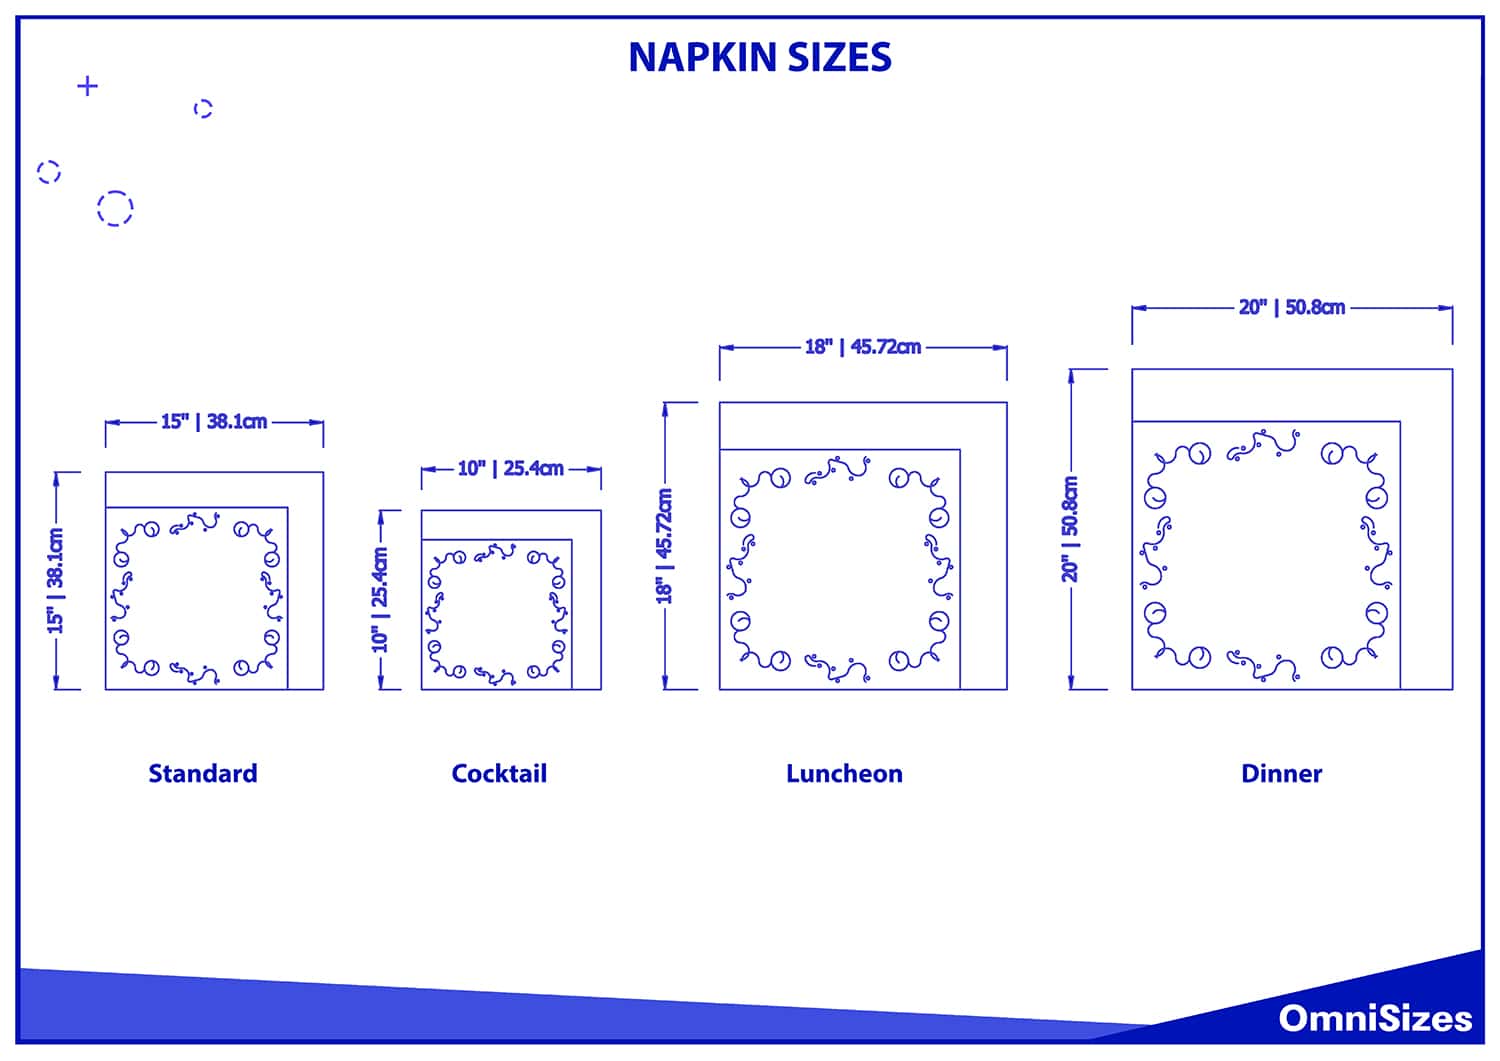 Napkin sizes